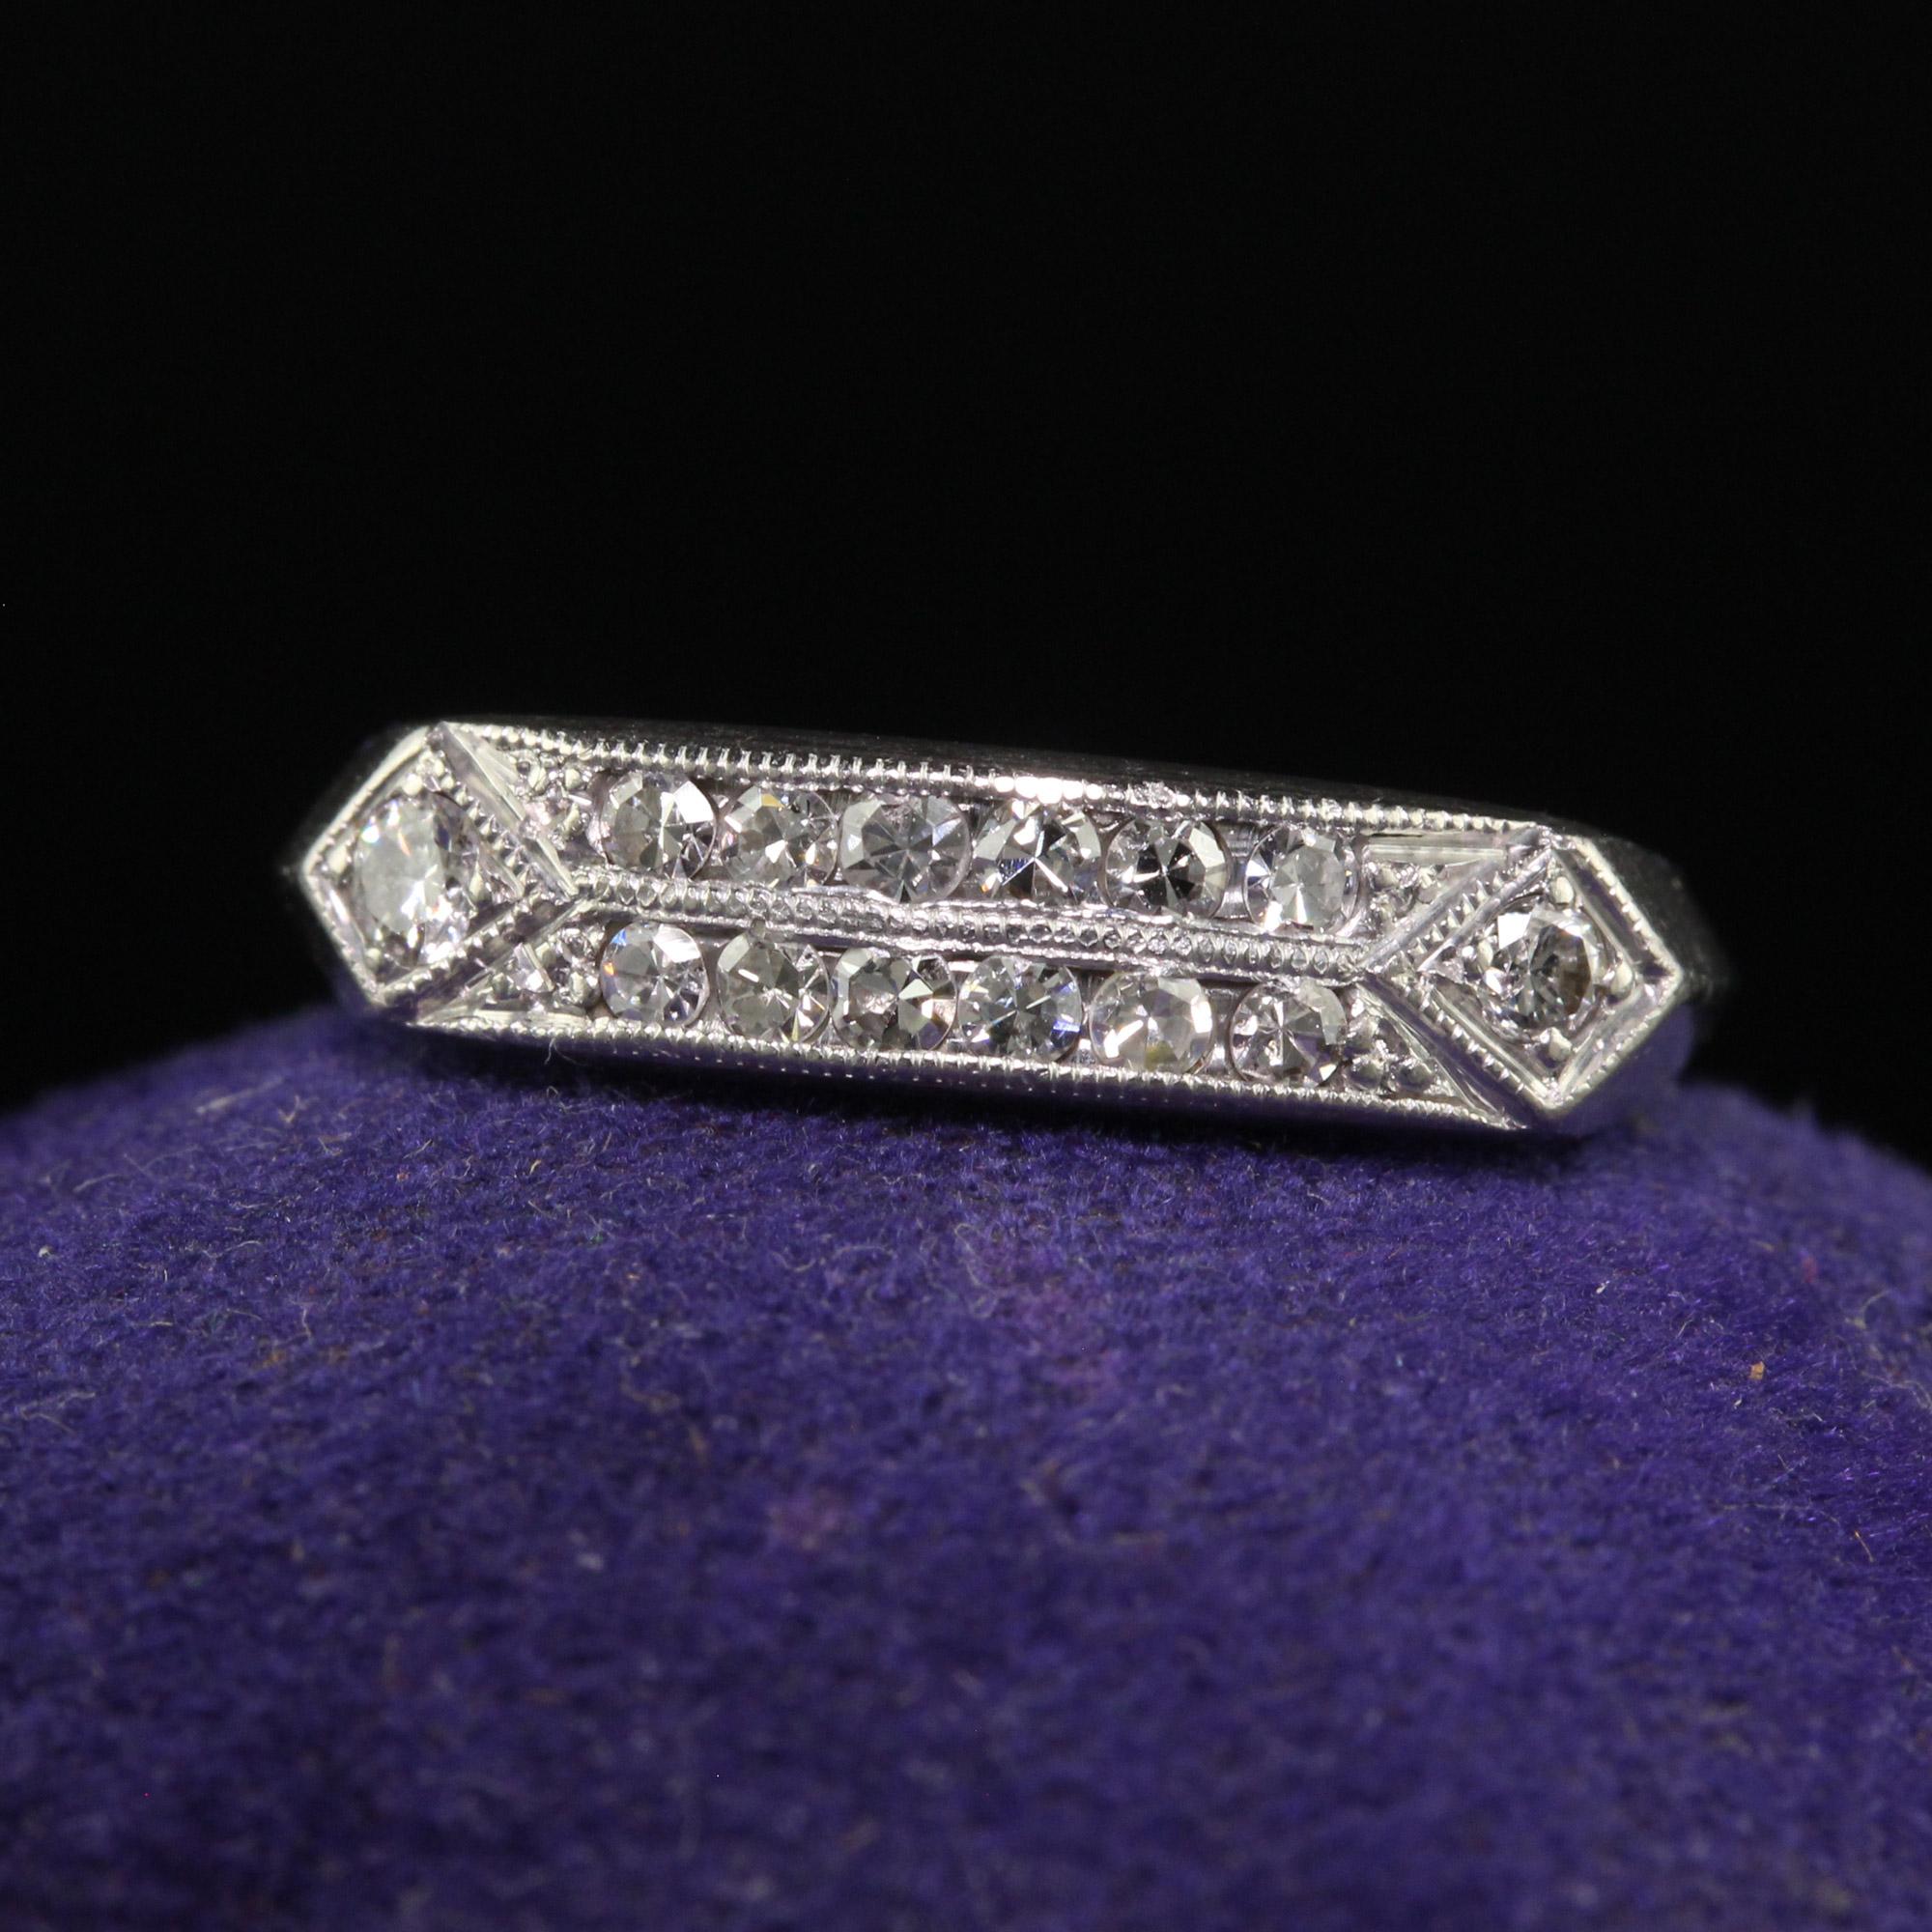 Wunderschöner antiker Art Deco Platin Ehering mit einem Diamanten - Größe 6. Diese wunderschöne antike Art Deco Ehering ist in Platin gefertigt. Dieser Ring besteht aus zwei Reihen weißer, einzeln geschliffener Diamanten und einem einzelnen